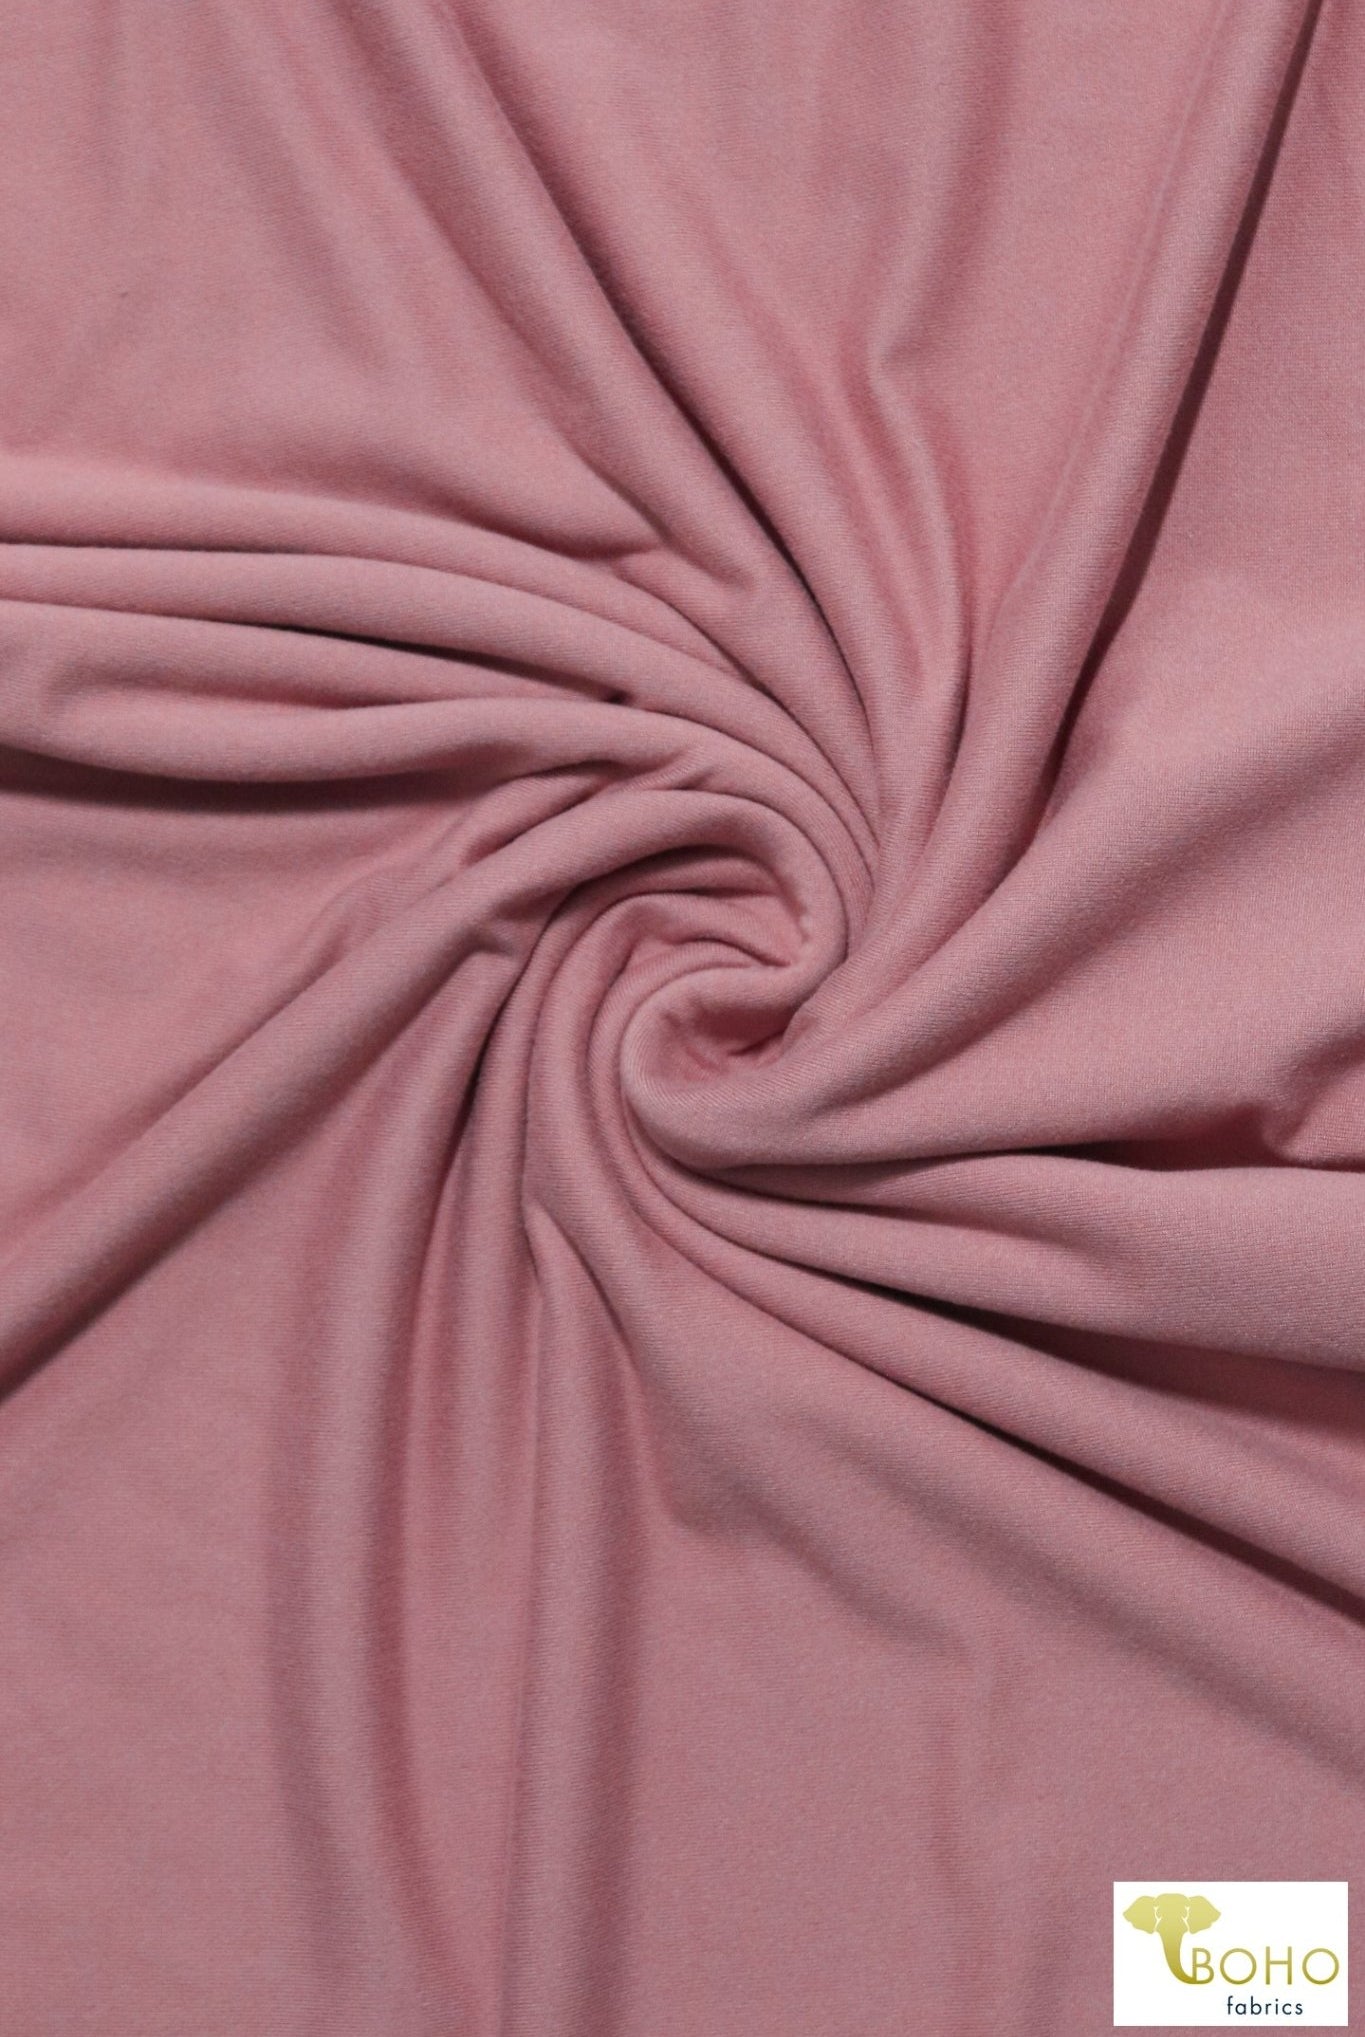 Mauve Pink. Double Brushed Poly Knit Fabric. BPS-203 - Boho Fabrics